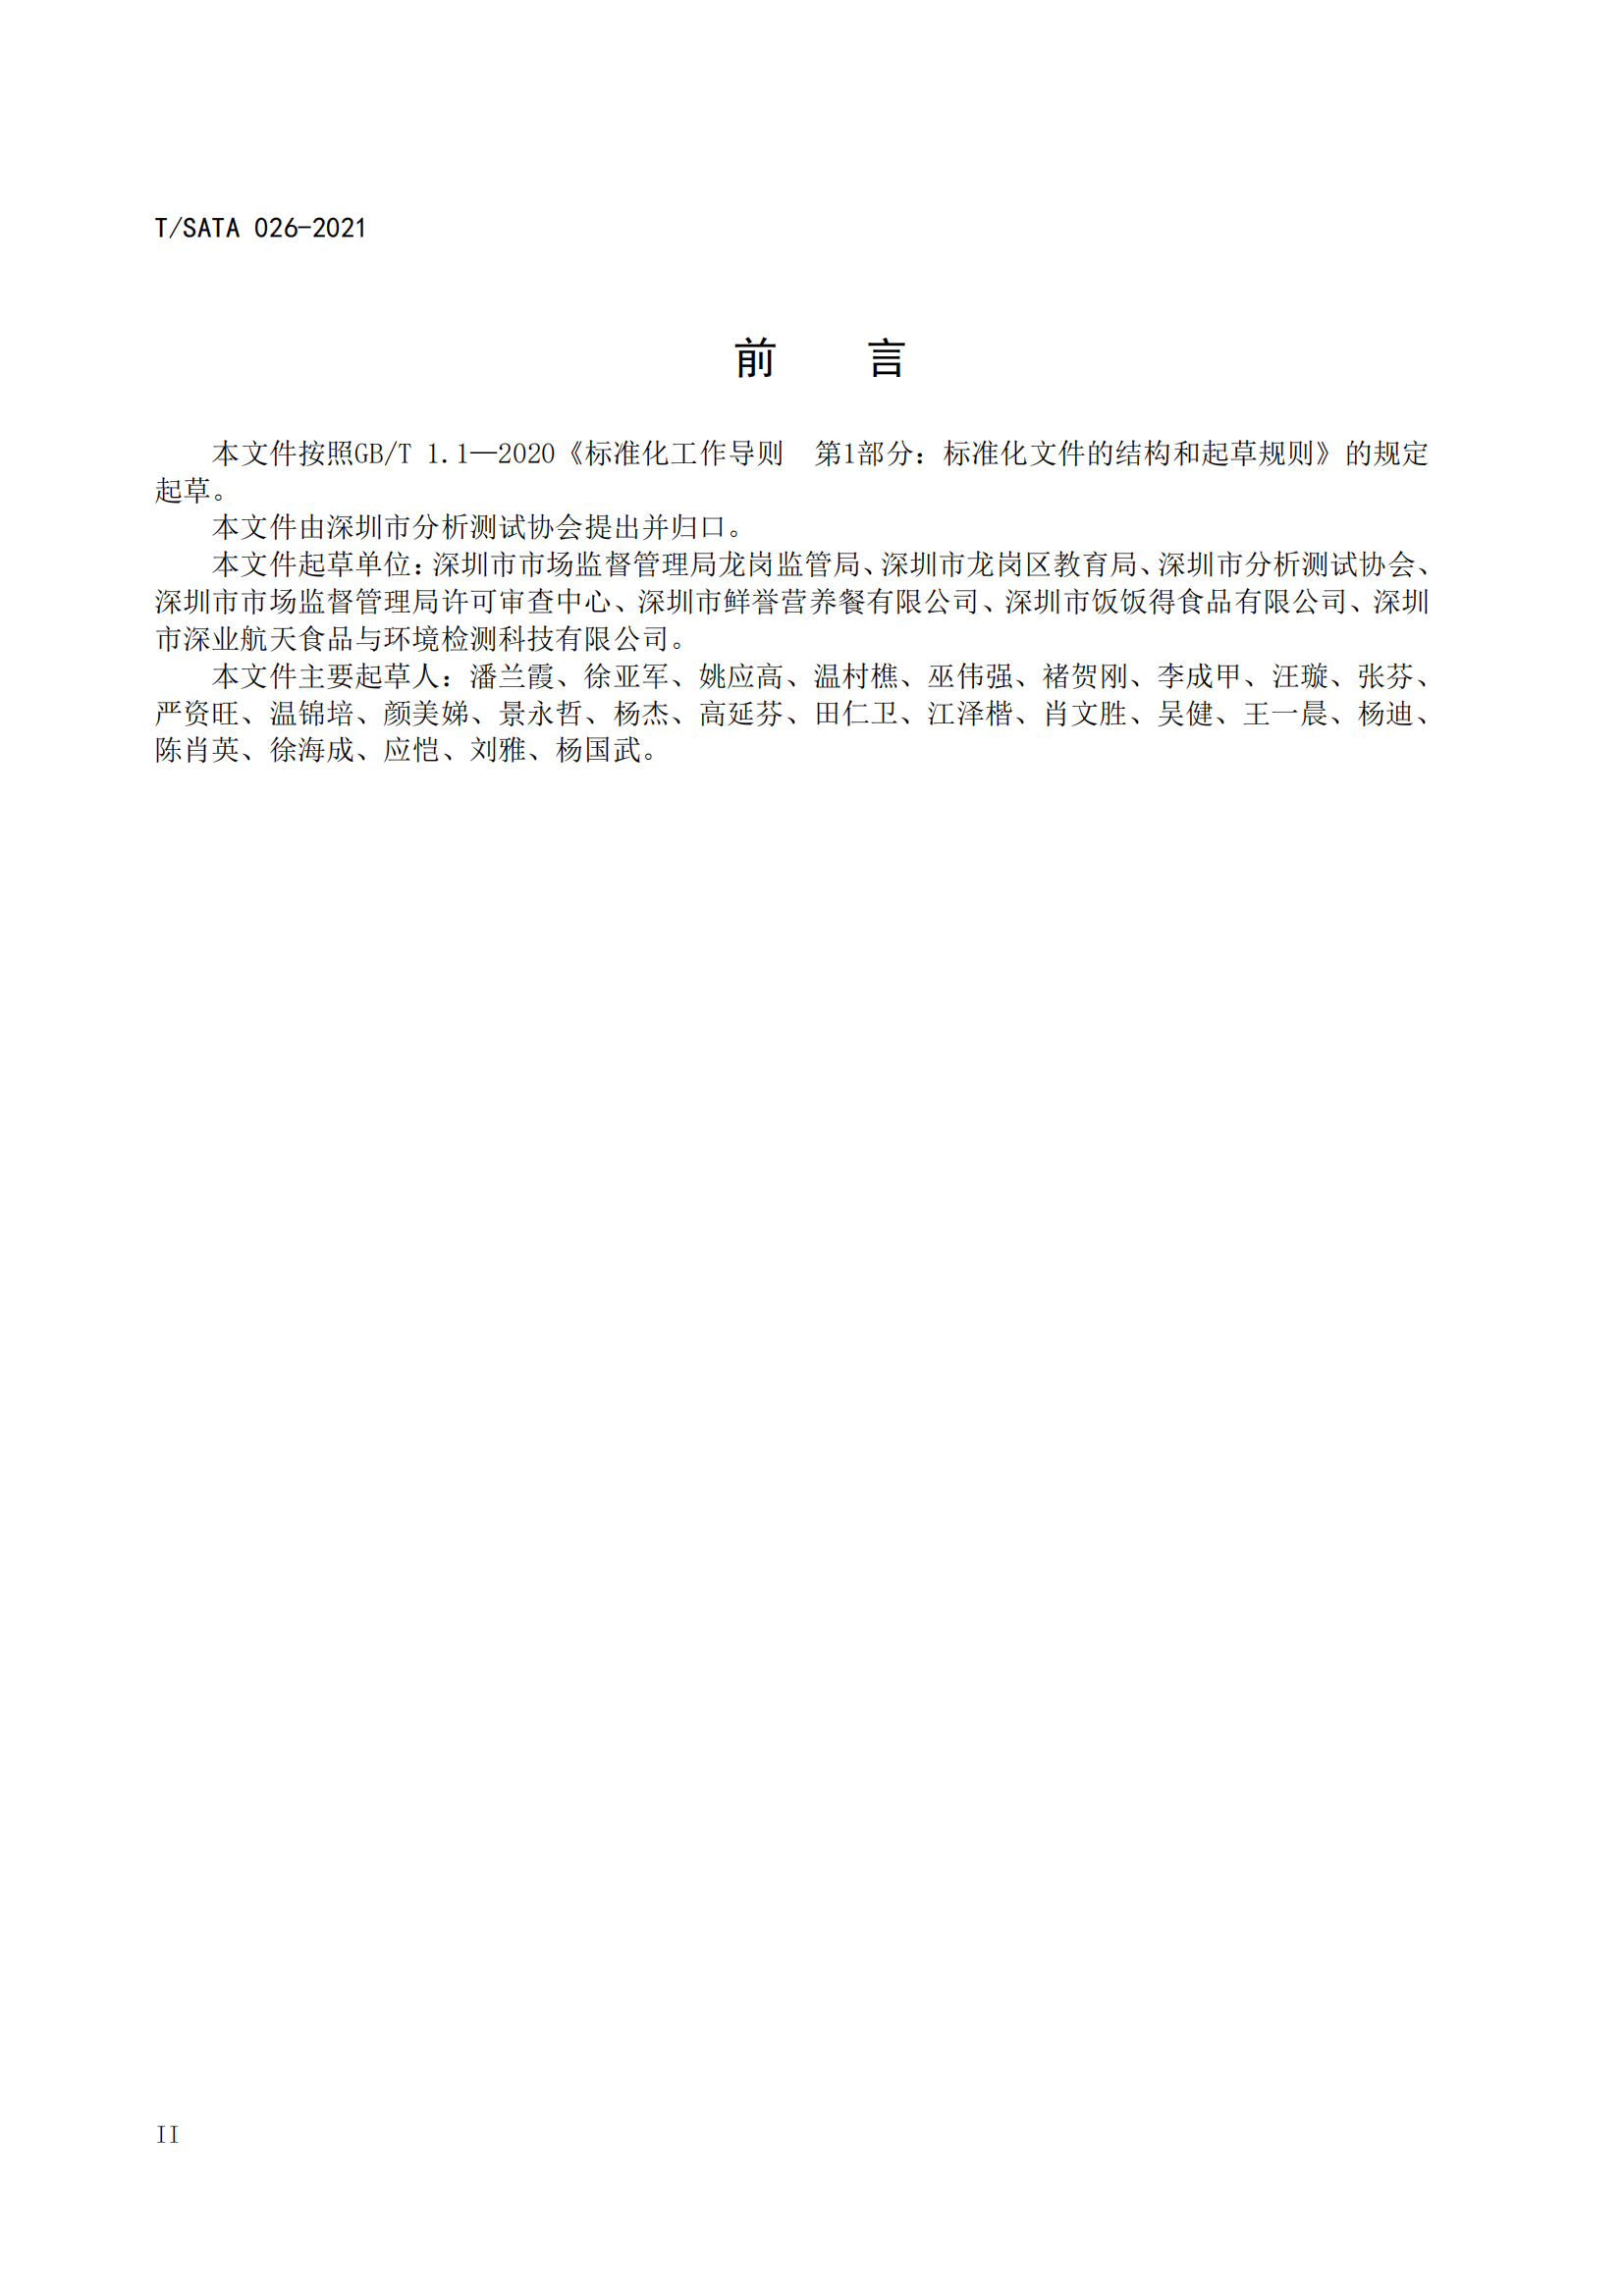 《深圳市校外集中配送学生餐操作规范》团体标准（发布版）2021.11.18终_02.png